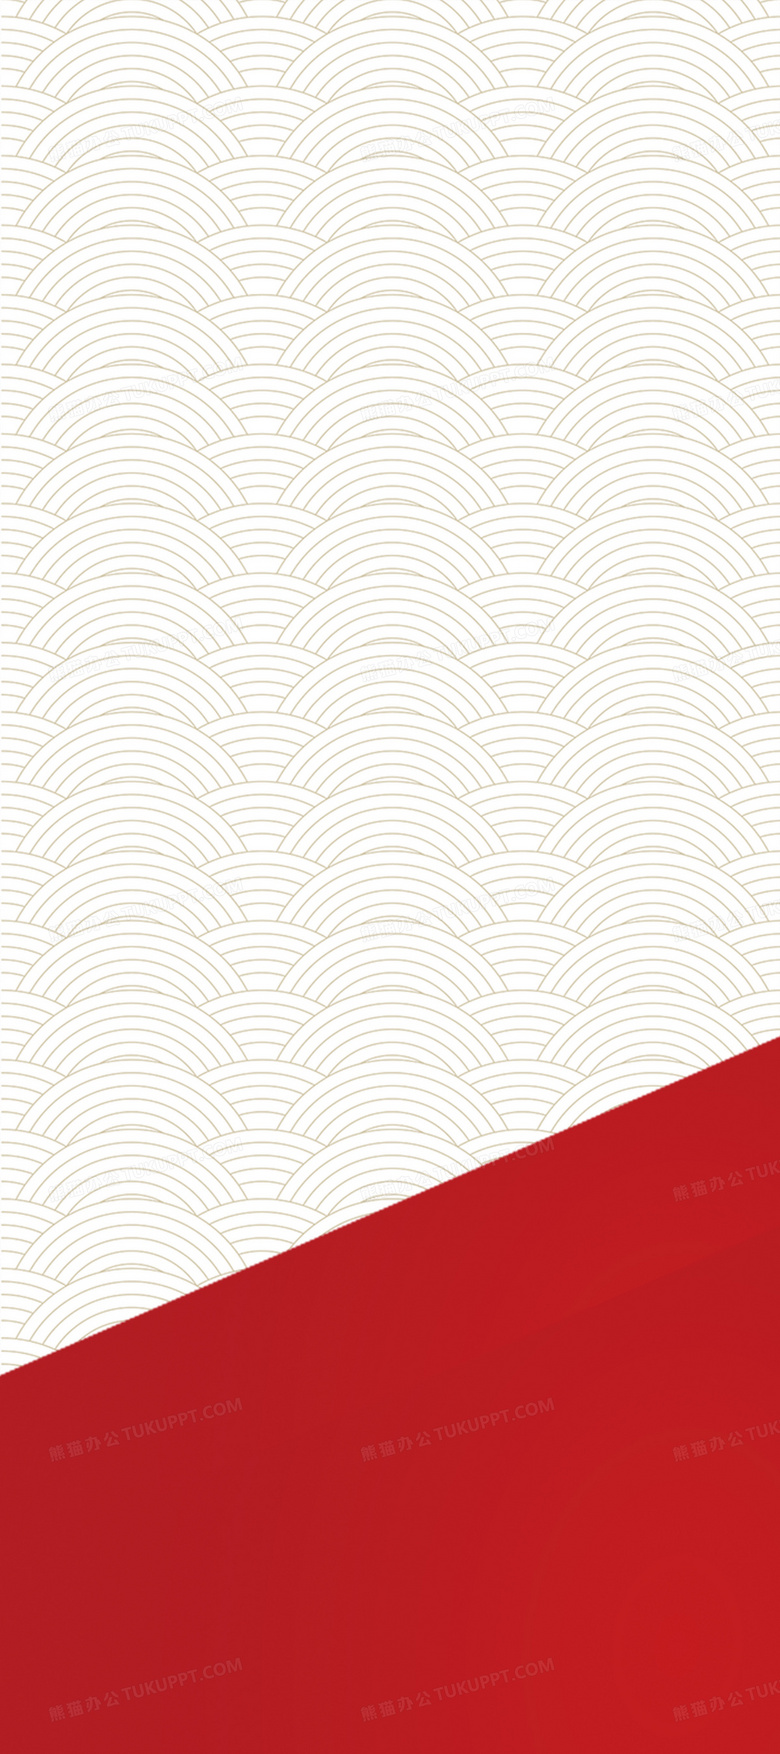 红白相间的海报素材背景图片素材免费下载 海报素材背景 00 4497像素 熊猫办公